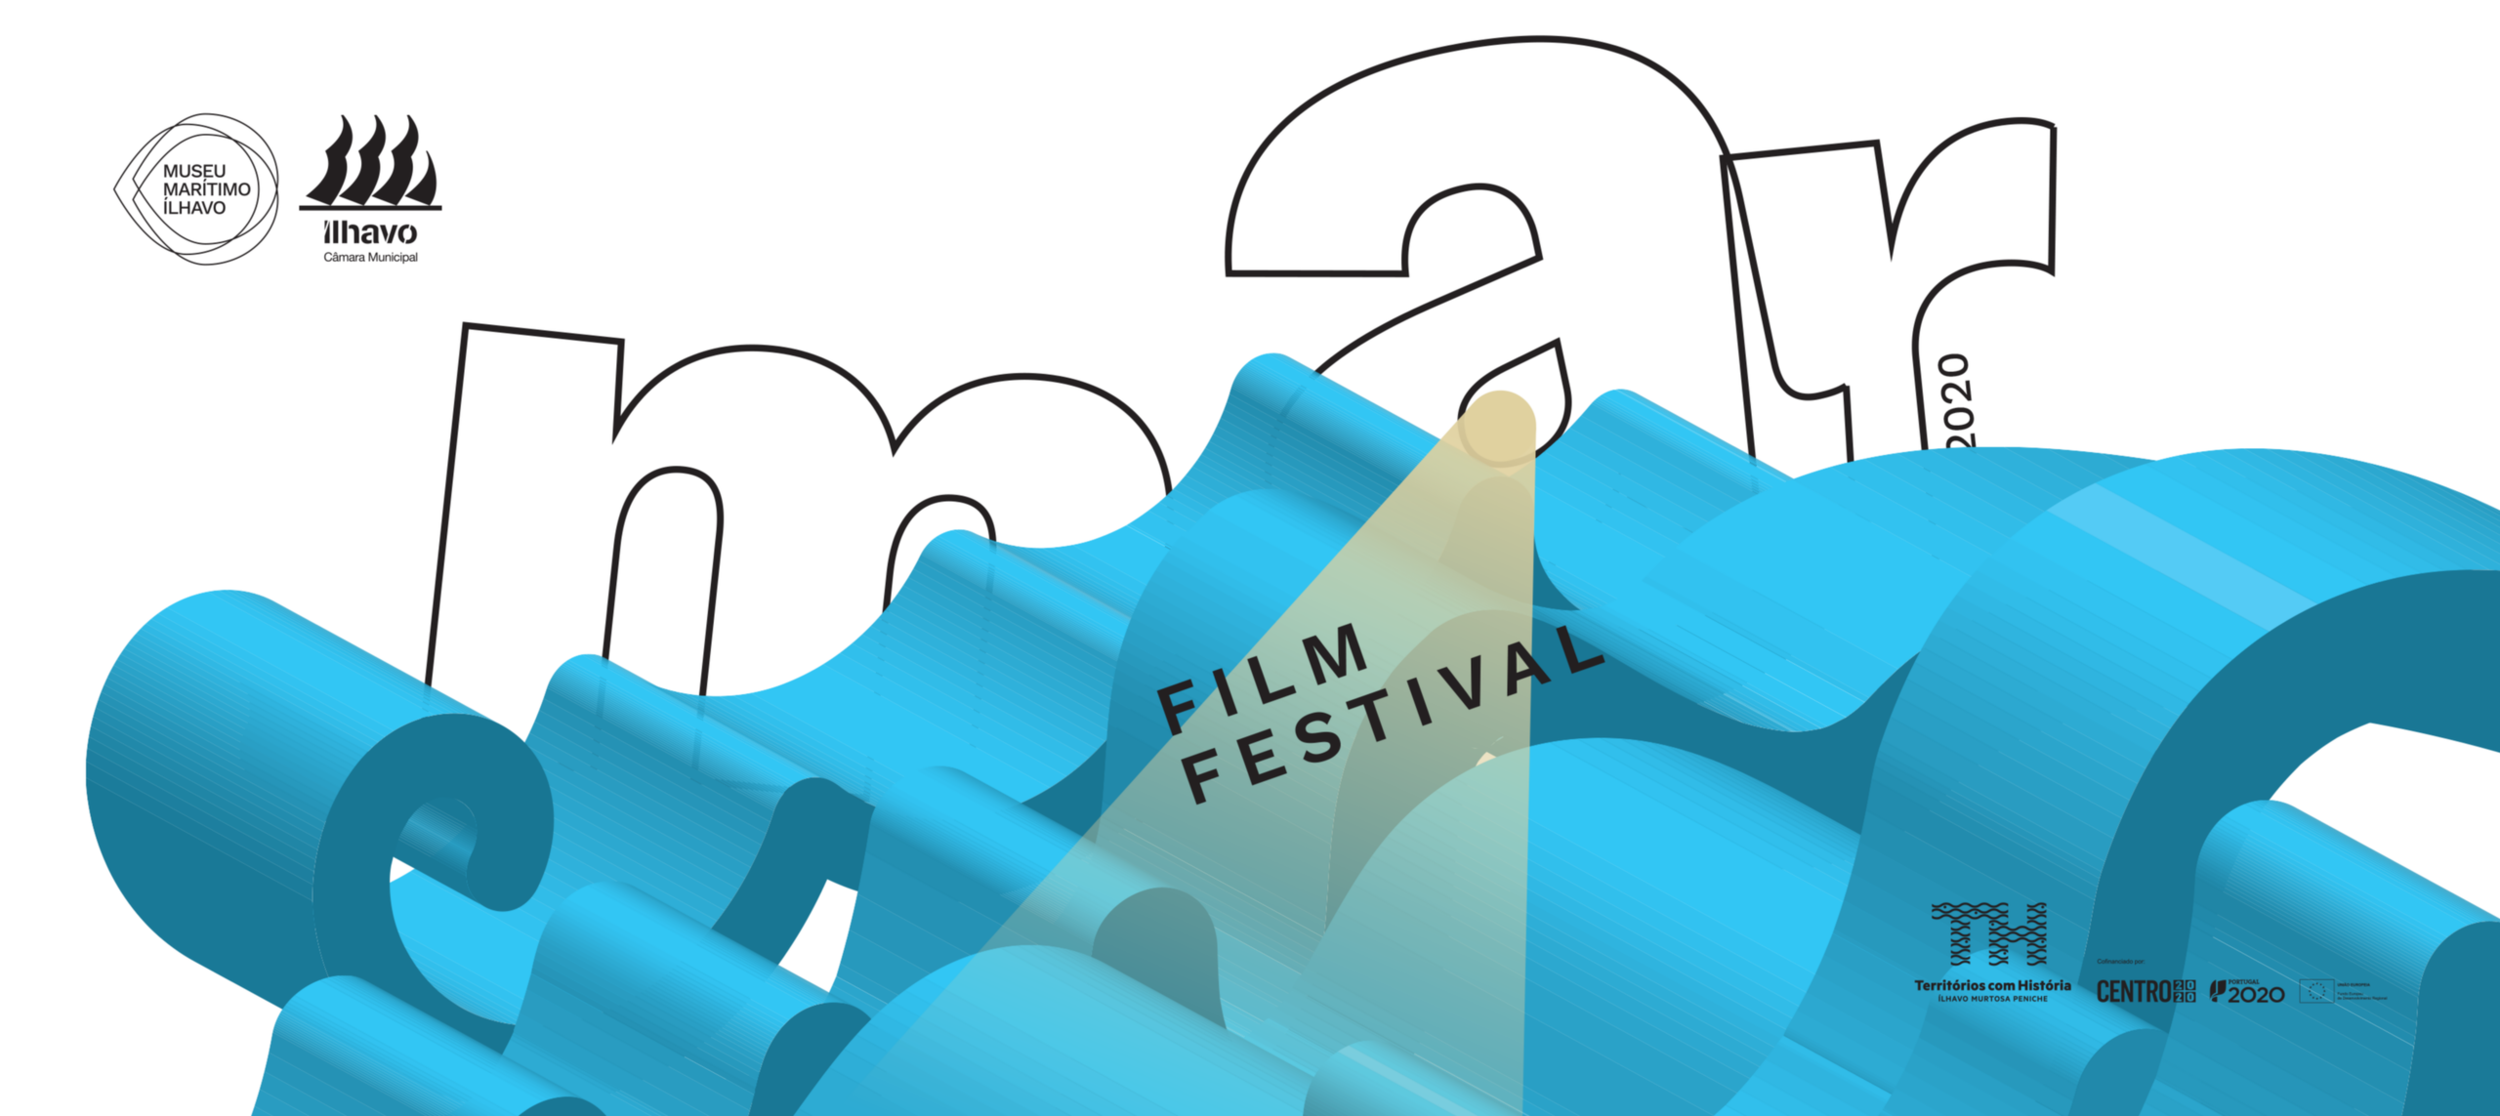 Mar Film Festival regressa, este mês, com edição especial